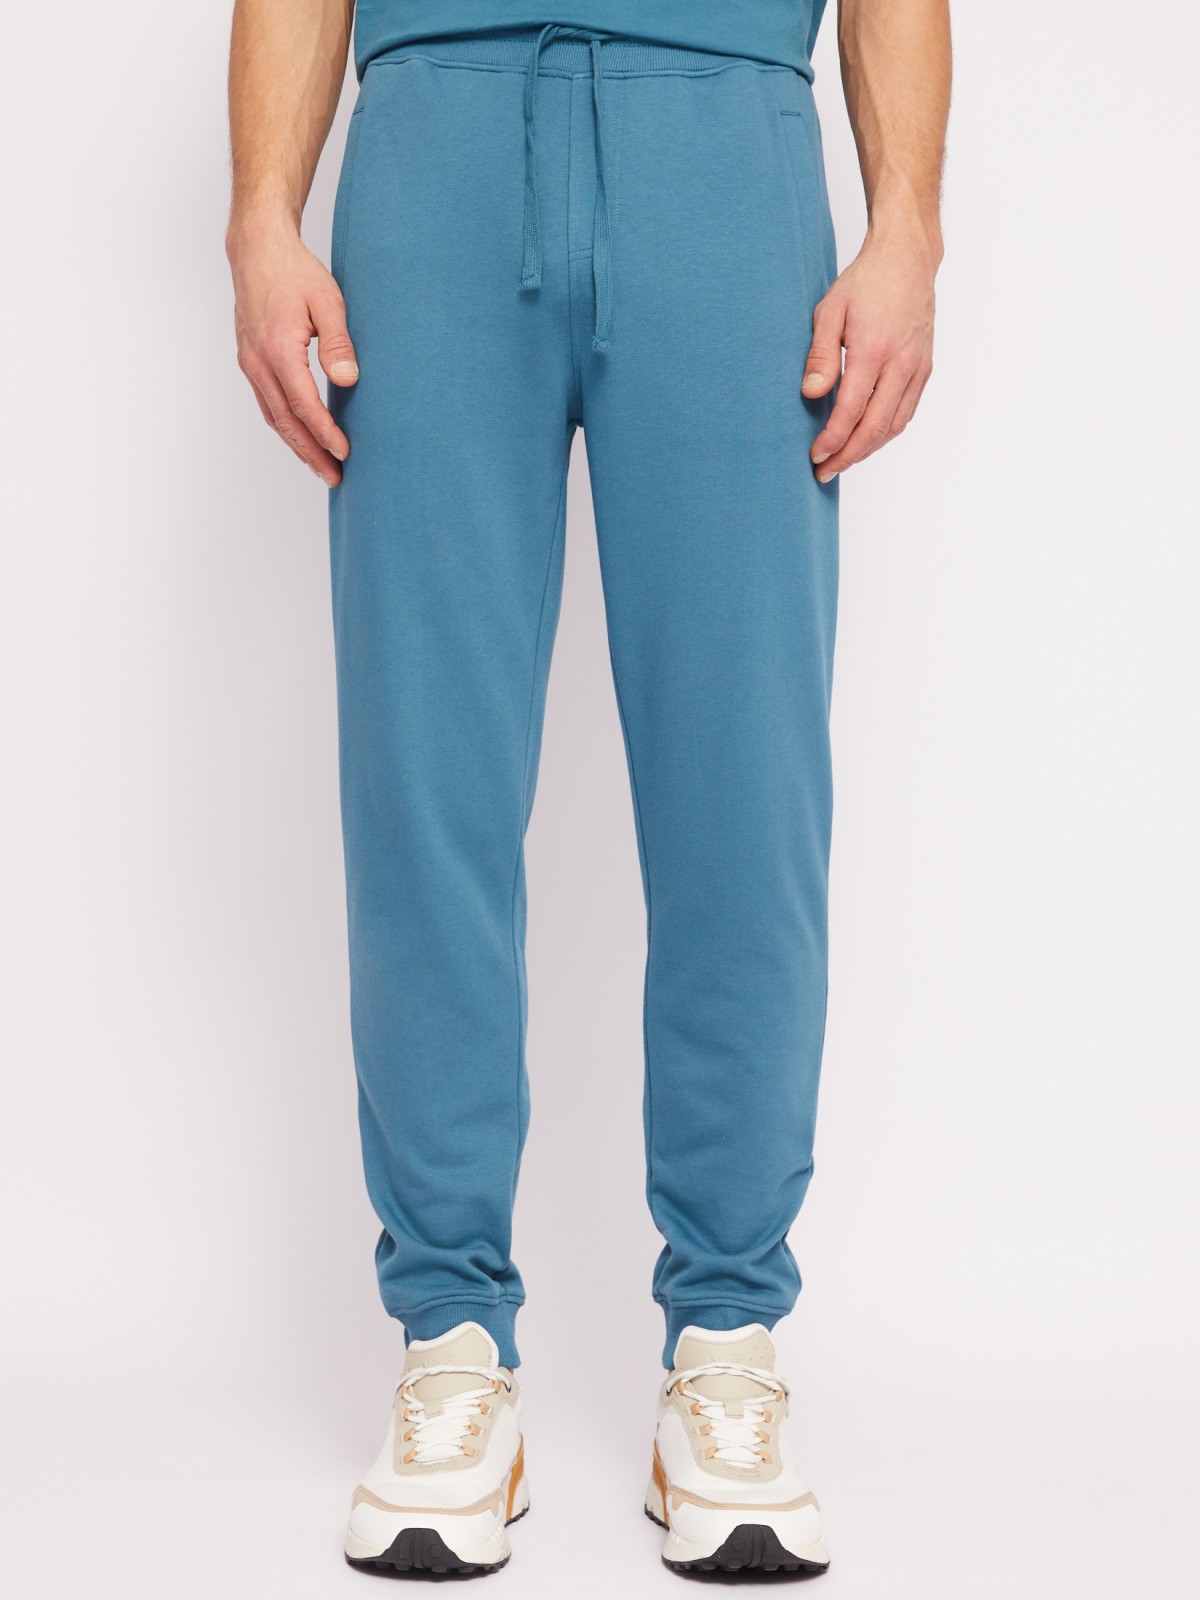 Трикотажные брюки-джоггеры в спортивном стиле zolla 014217675012, цвет бирюзовый, размер S - фото 2